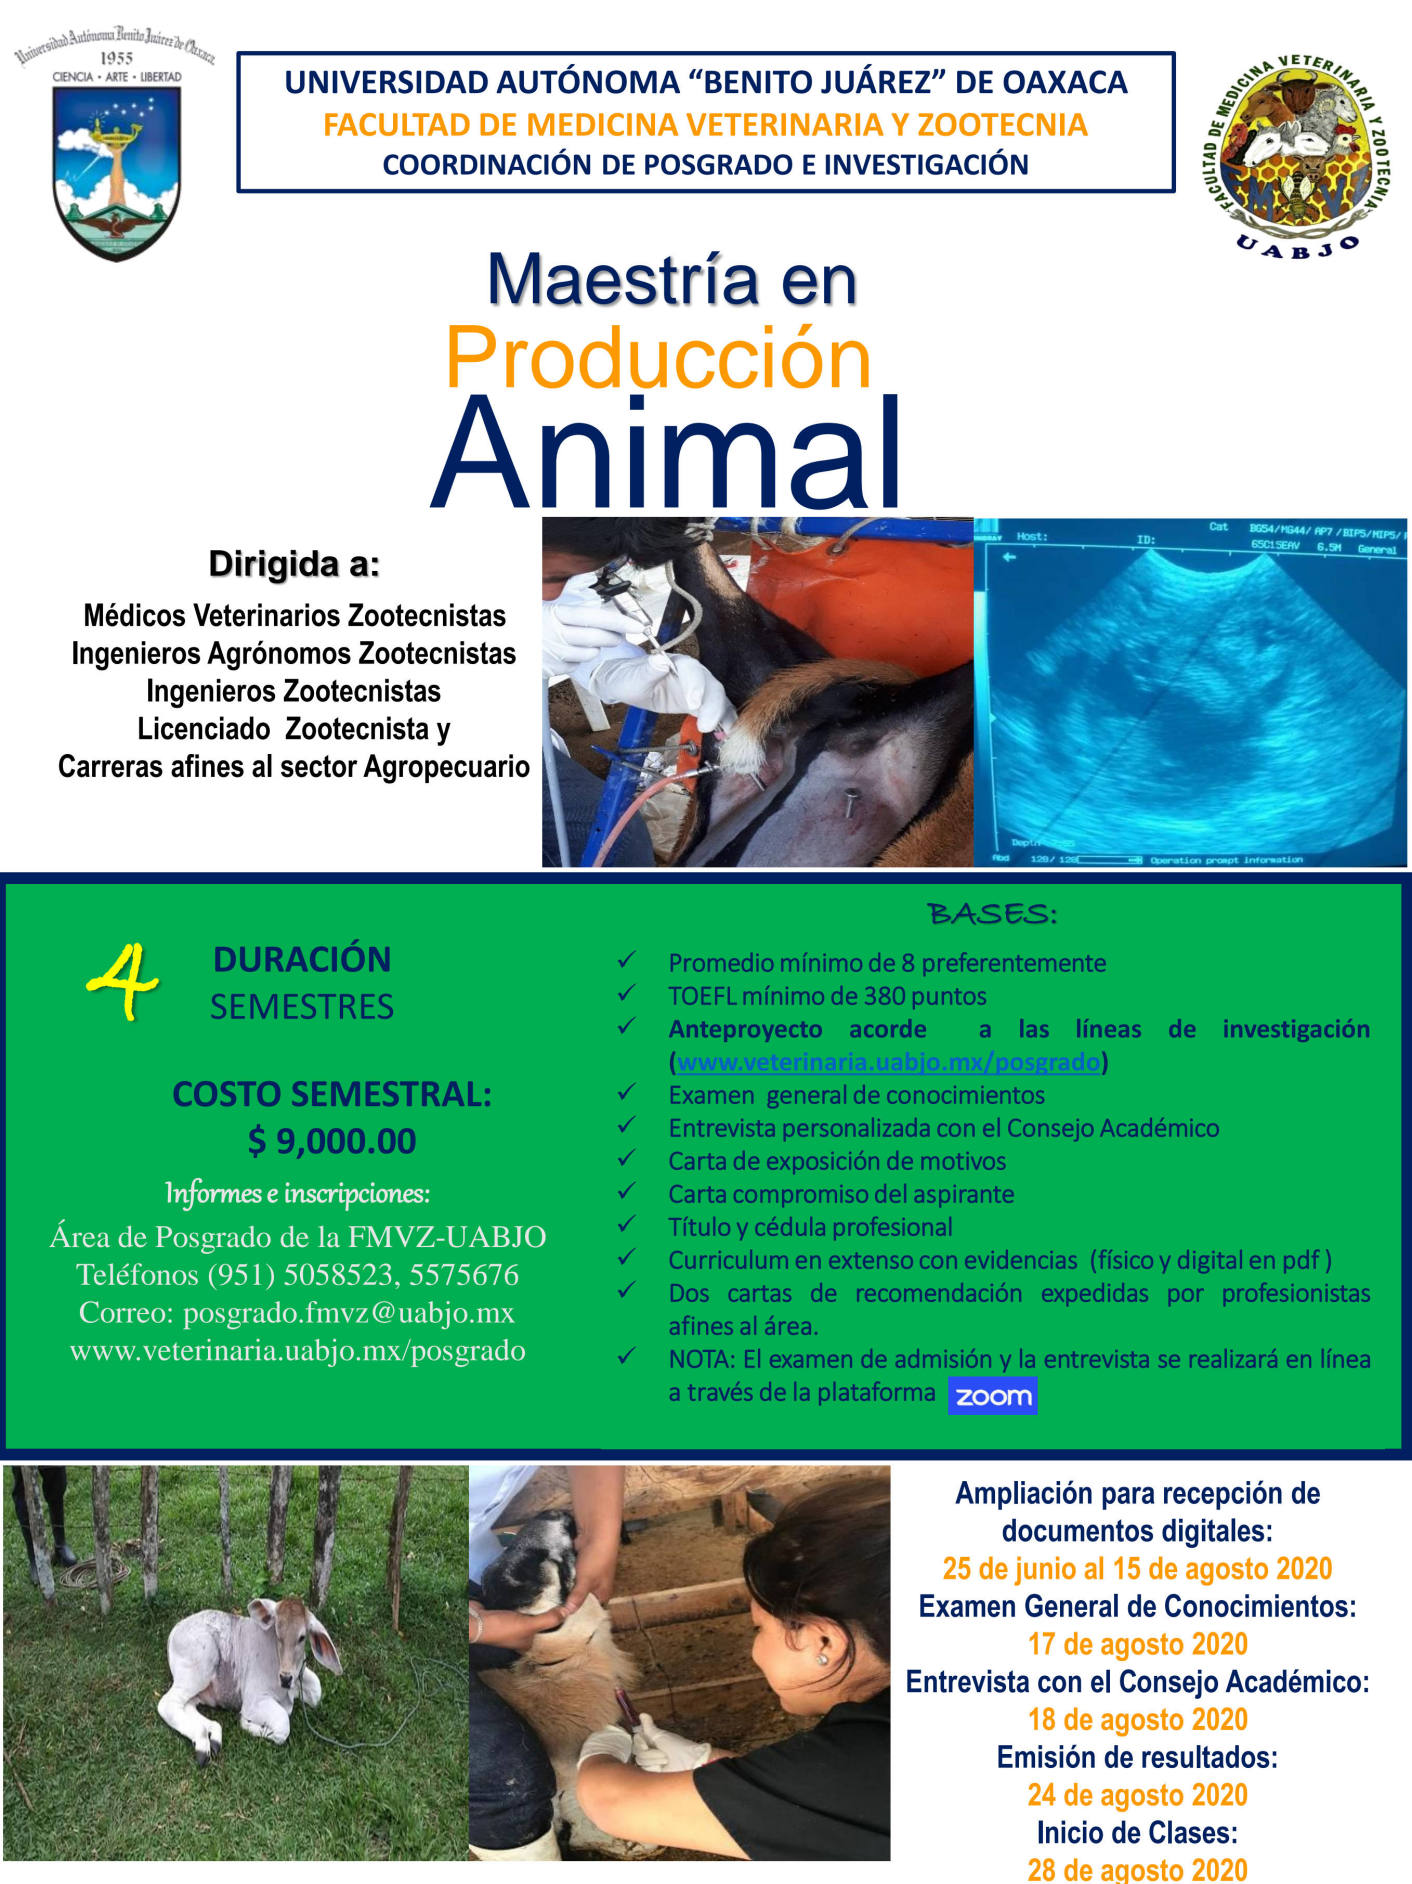 Oferta la UABJO Maestría en Producción Animal; Inscripciones abiertas hasta el 15 de agosto